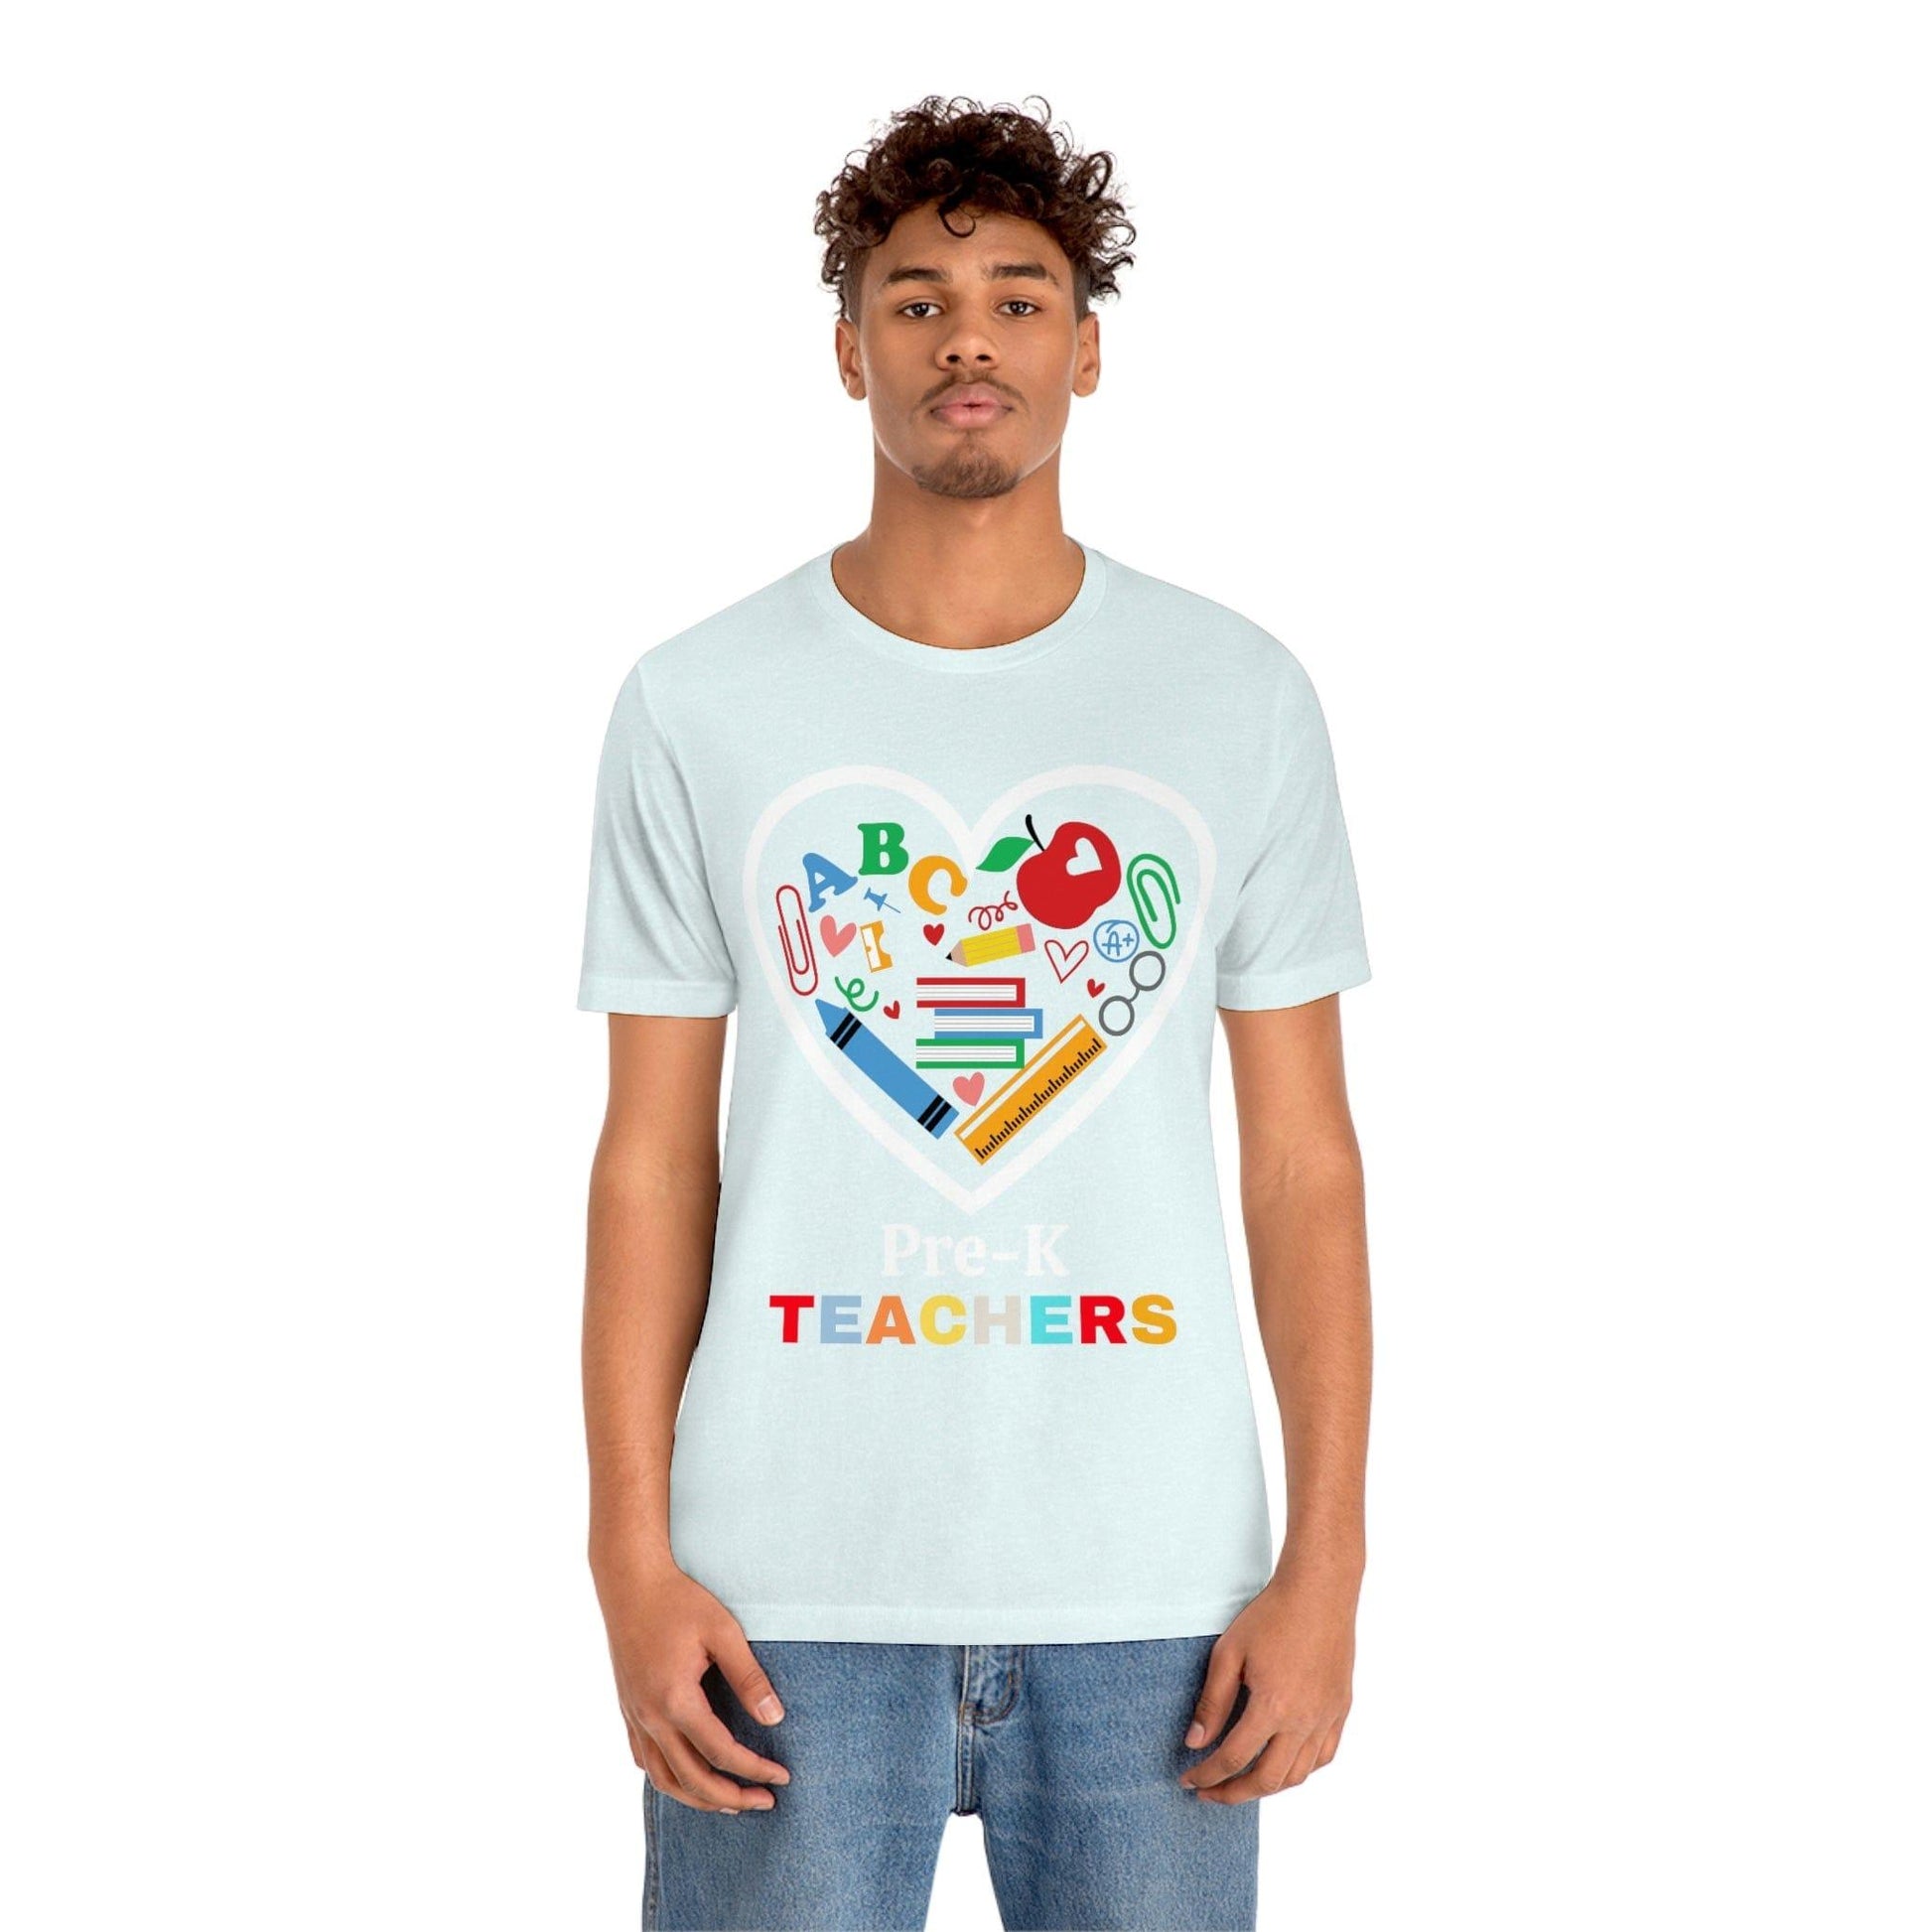 Love Pre K Teachers Shirt - Teacher Appreciation Shirt - Gift for Love Pre K Teacher - Giftsmojo